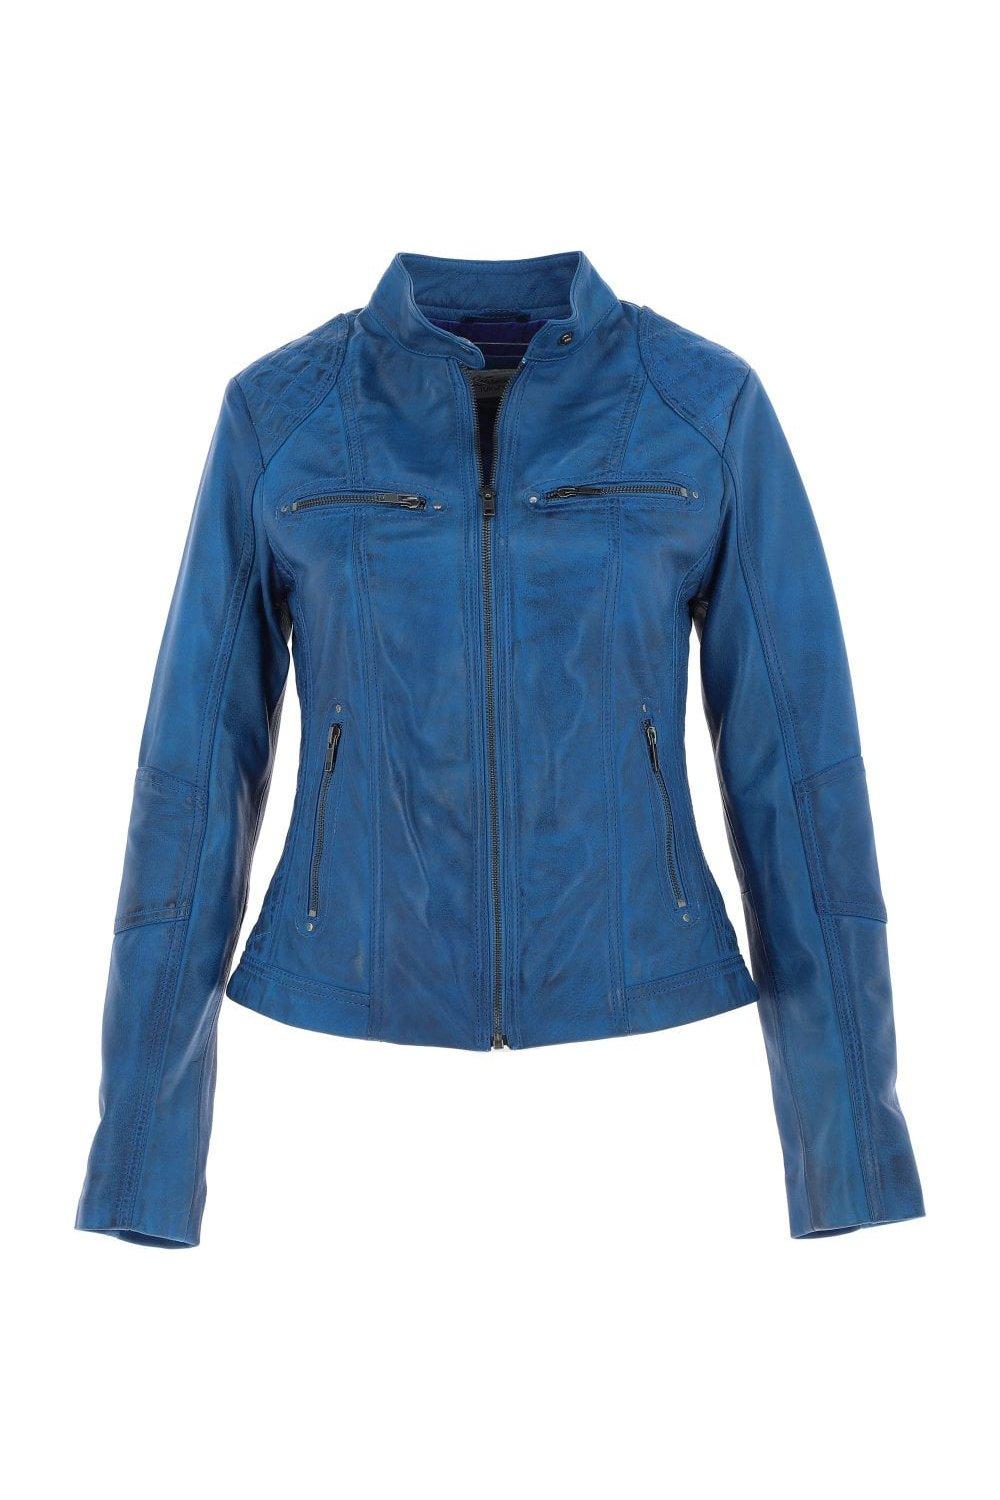 Модная куртка в байкерском стиле из натуральной кожи Donna Milano Ashwood Leather, синий leather jacket ad milano куртки из натуральной кожи узкого покроя